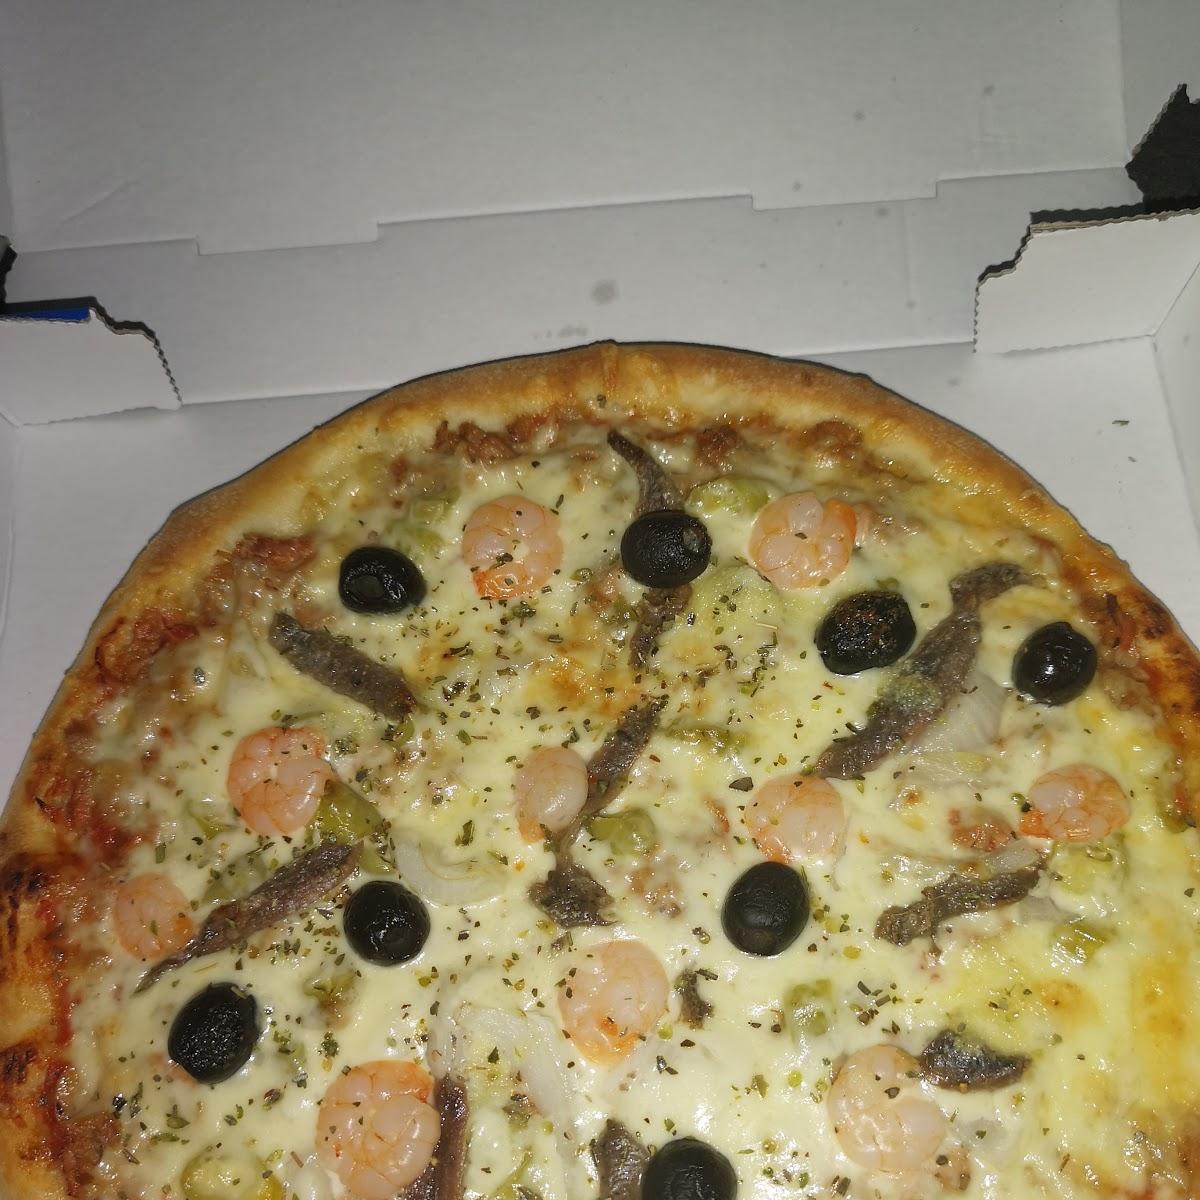 Restaurant "Can Pizzeria" in Goch